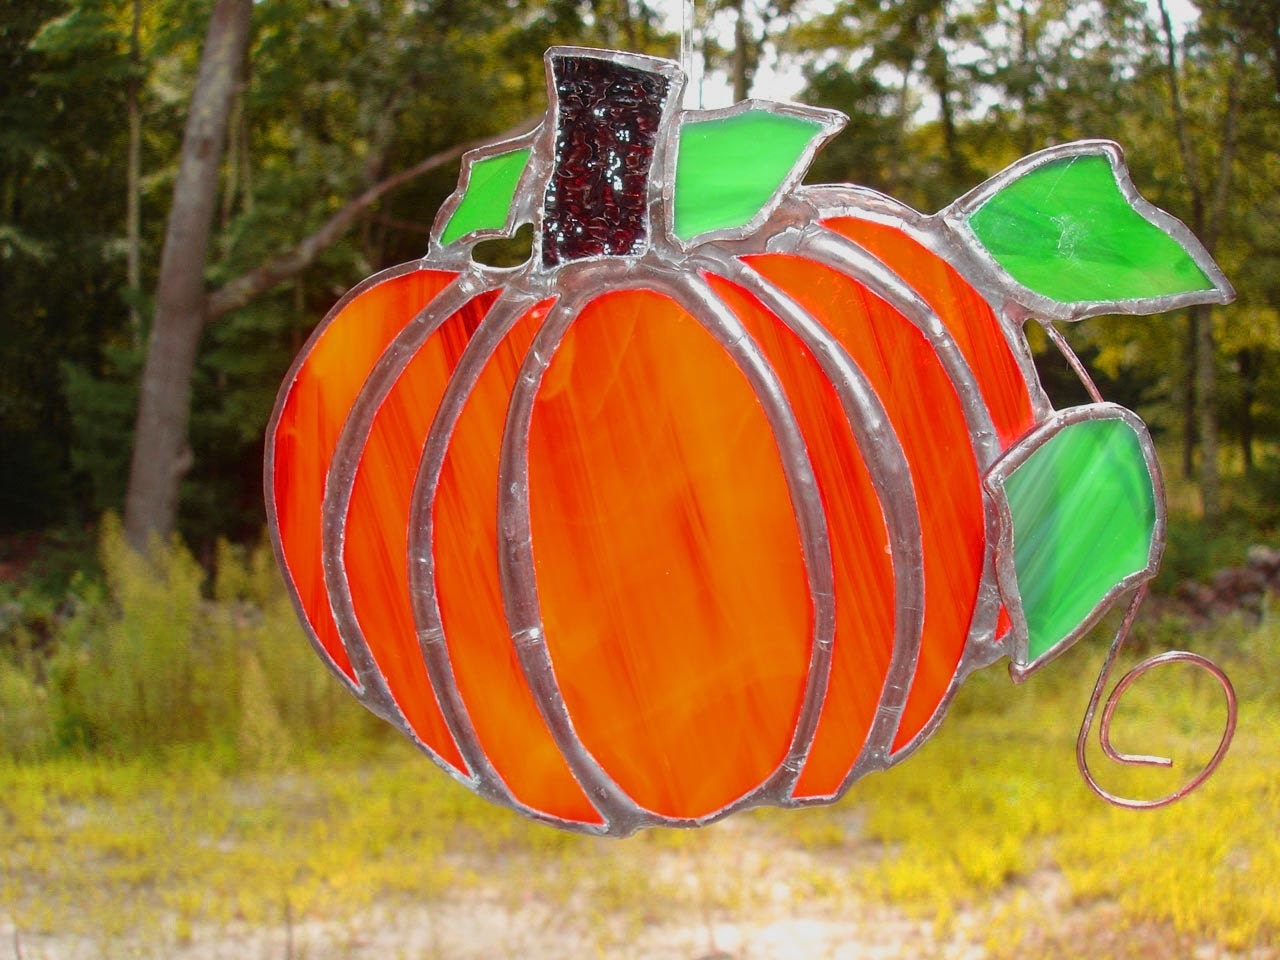 Pumpkin, stained glass suncatcher